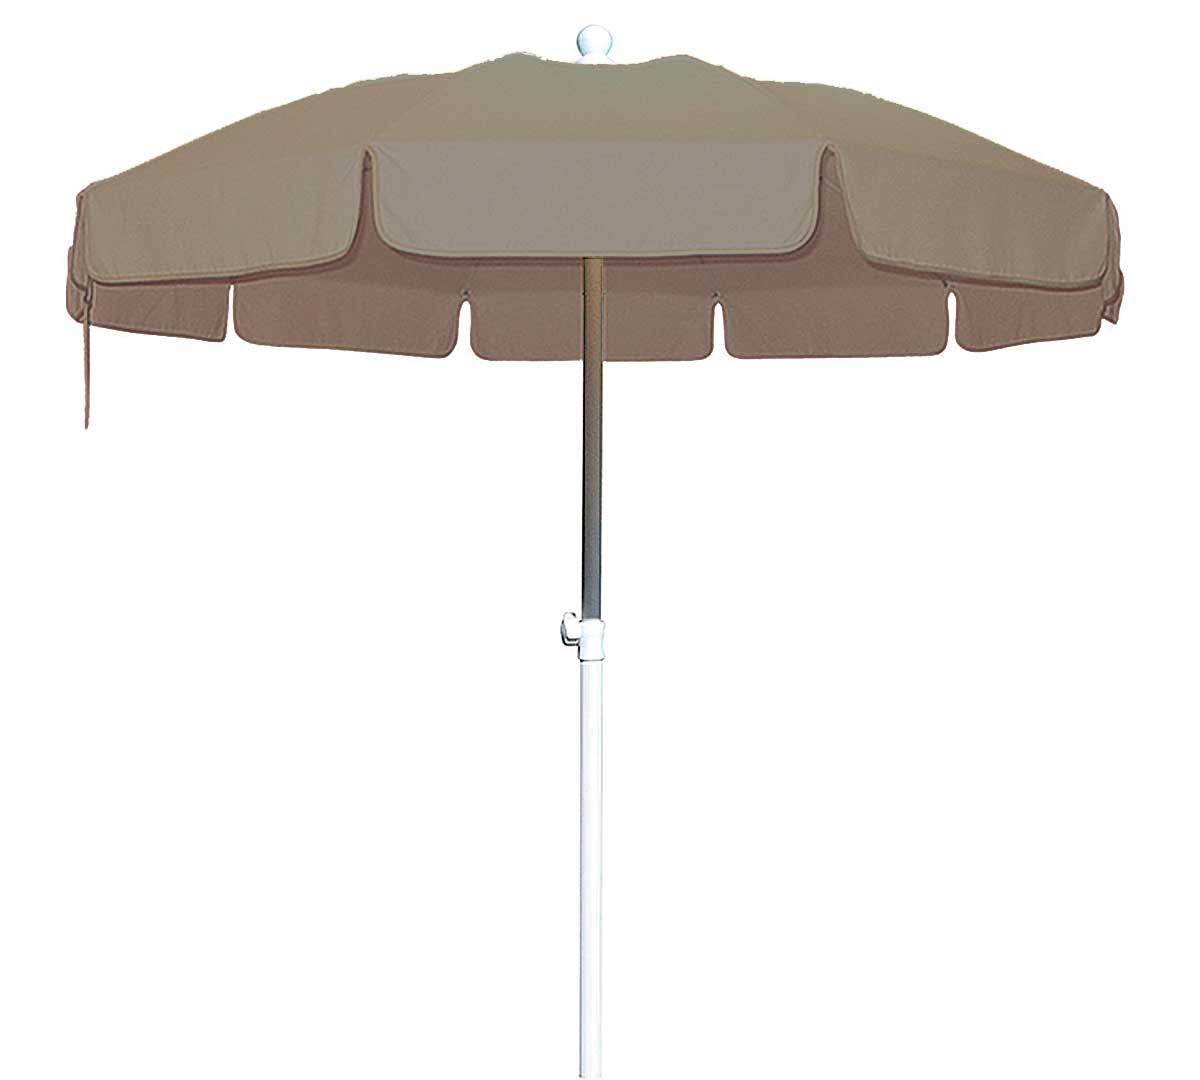 conva-parasol-aluminio-heavy-duty-839-acrilico-taupe-01